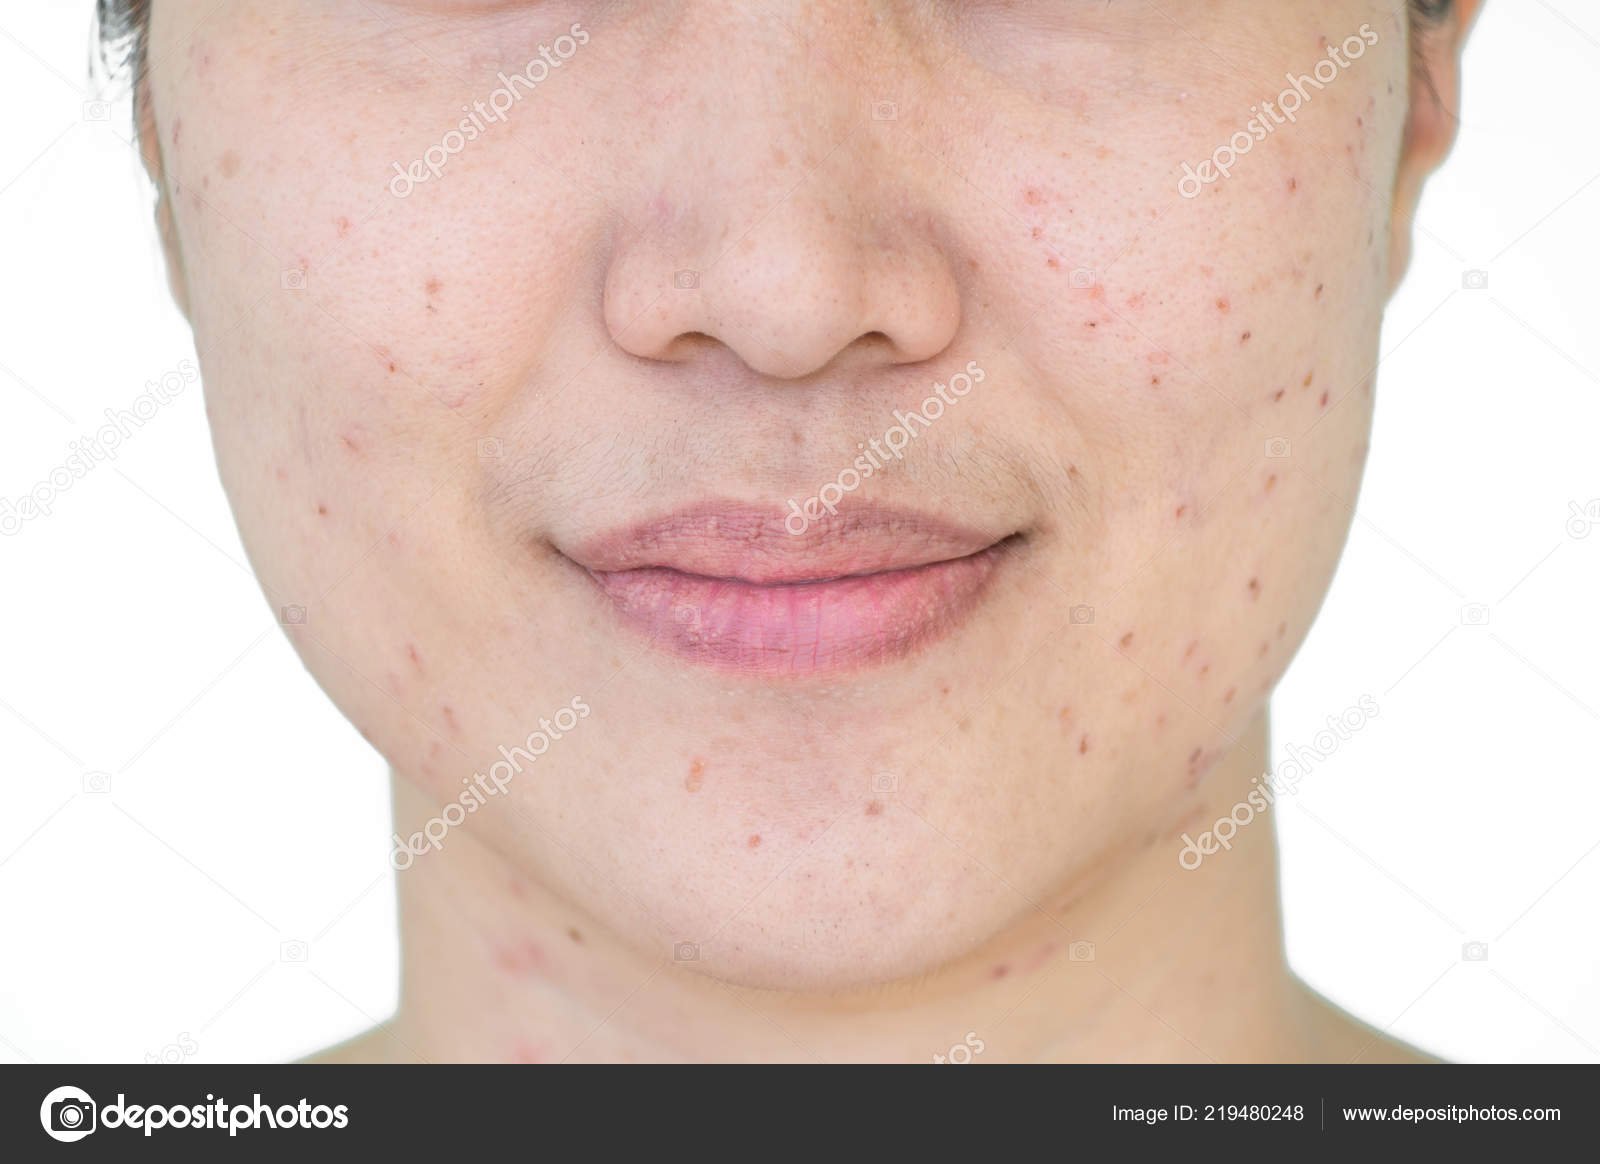 Burn Spots Scabs Laser Treatment Acne Skin Freckles Freckles Dark